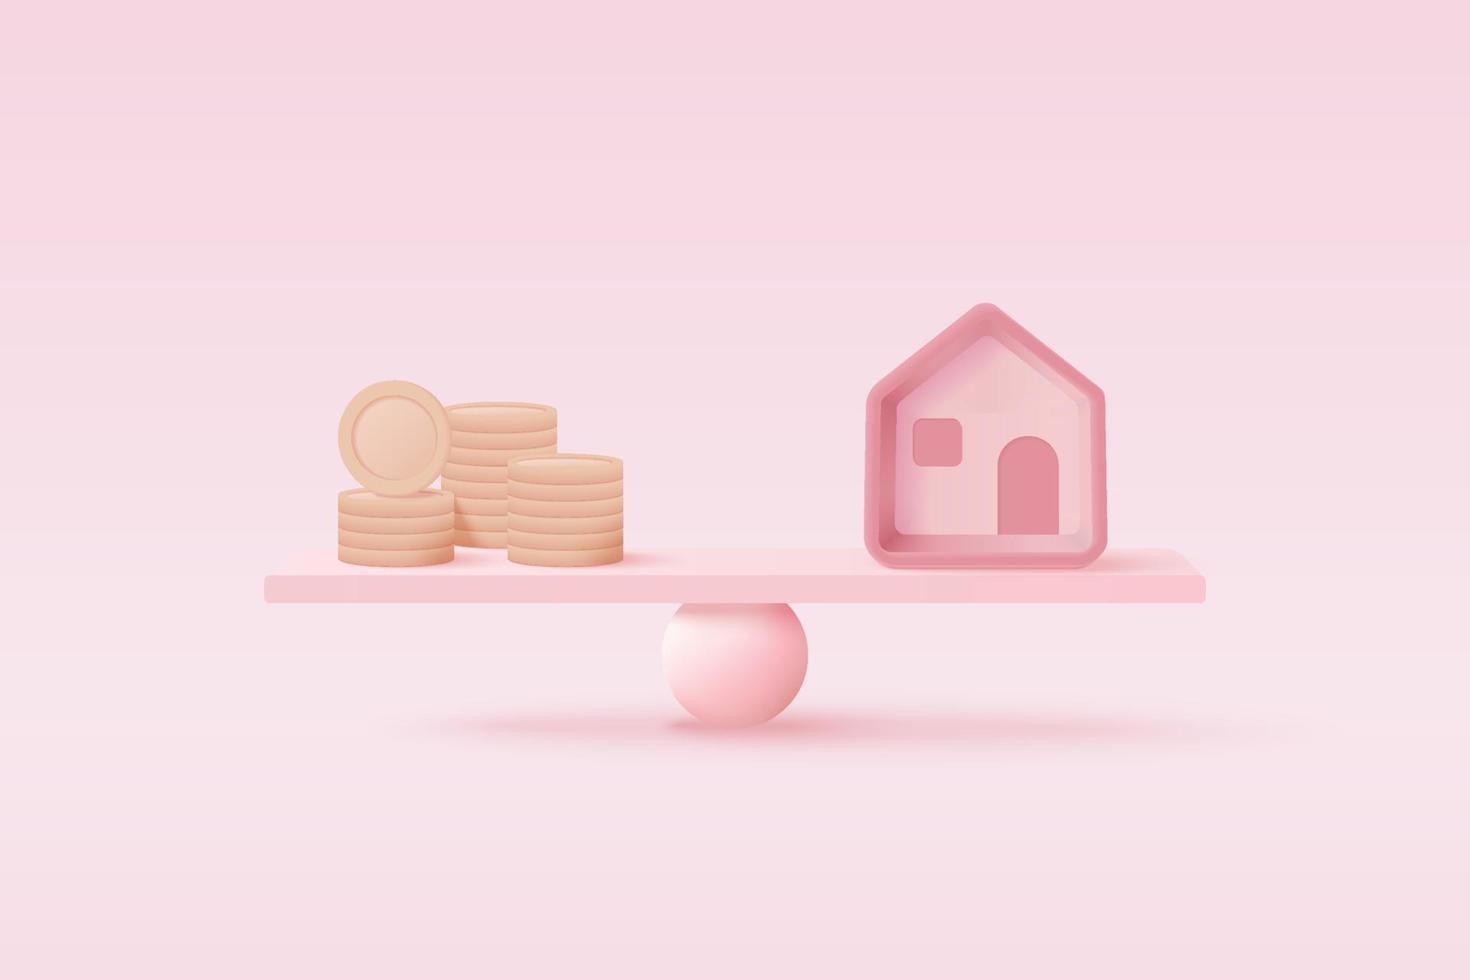 La pièce d'argent 3d compare la maison sur la balance, l'investissement financier, l'économie d'argent, l'échange d'argent avec la maison, le concept de gestion financière des prêts immobiliers. rendu 3d de vecteur d'équilibre de propriété à l'arrière-plan rose